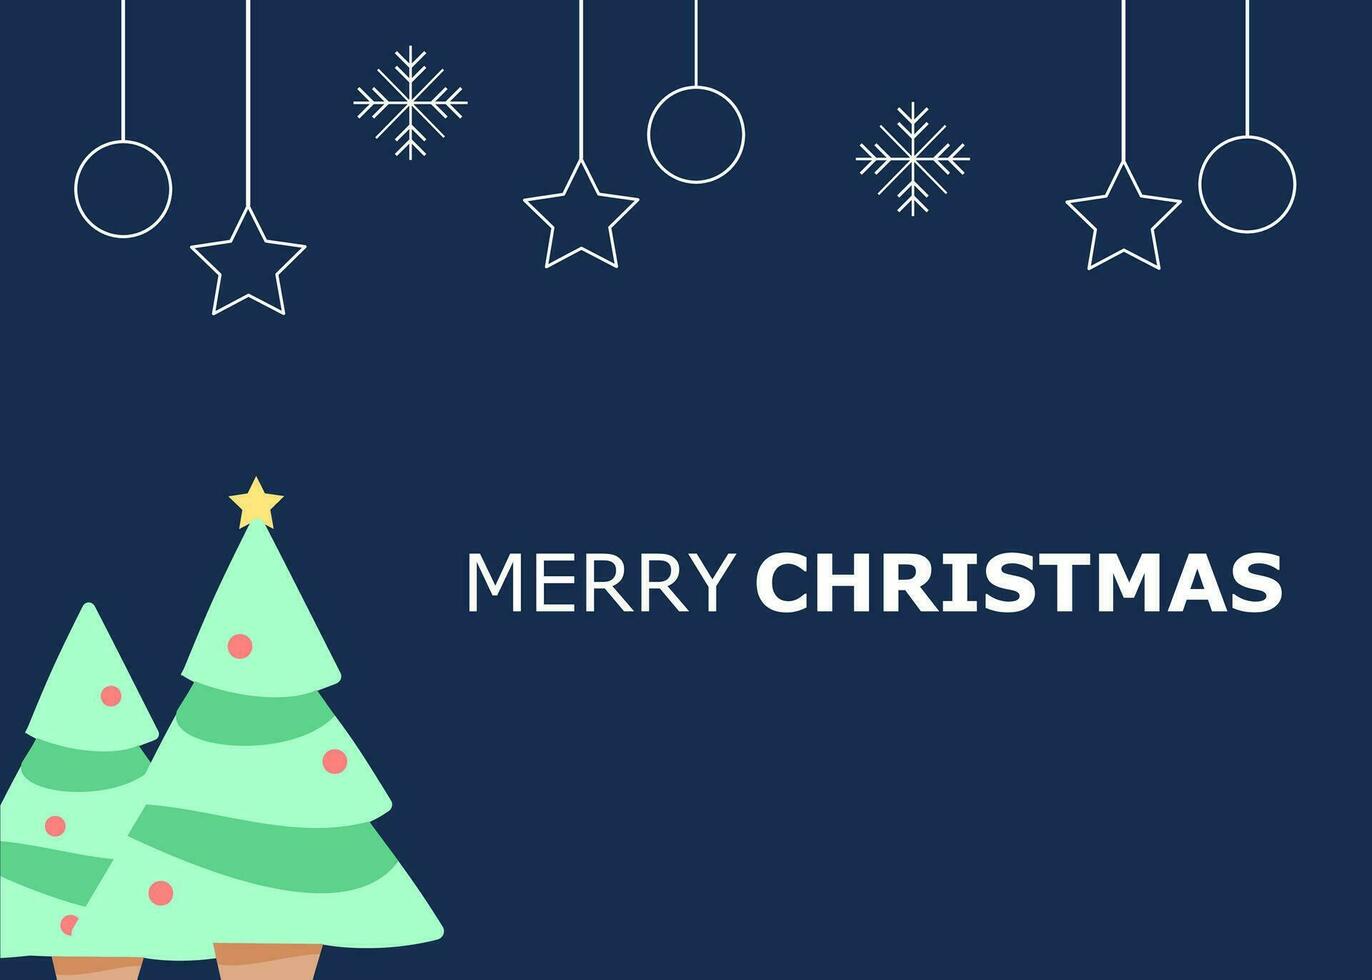 Merry Christmas or Christmas Card or Christmas Greeting Card or Christmas Postcard vector